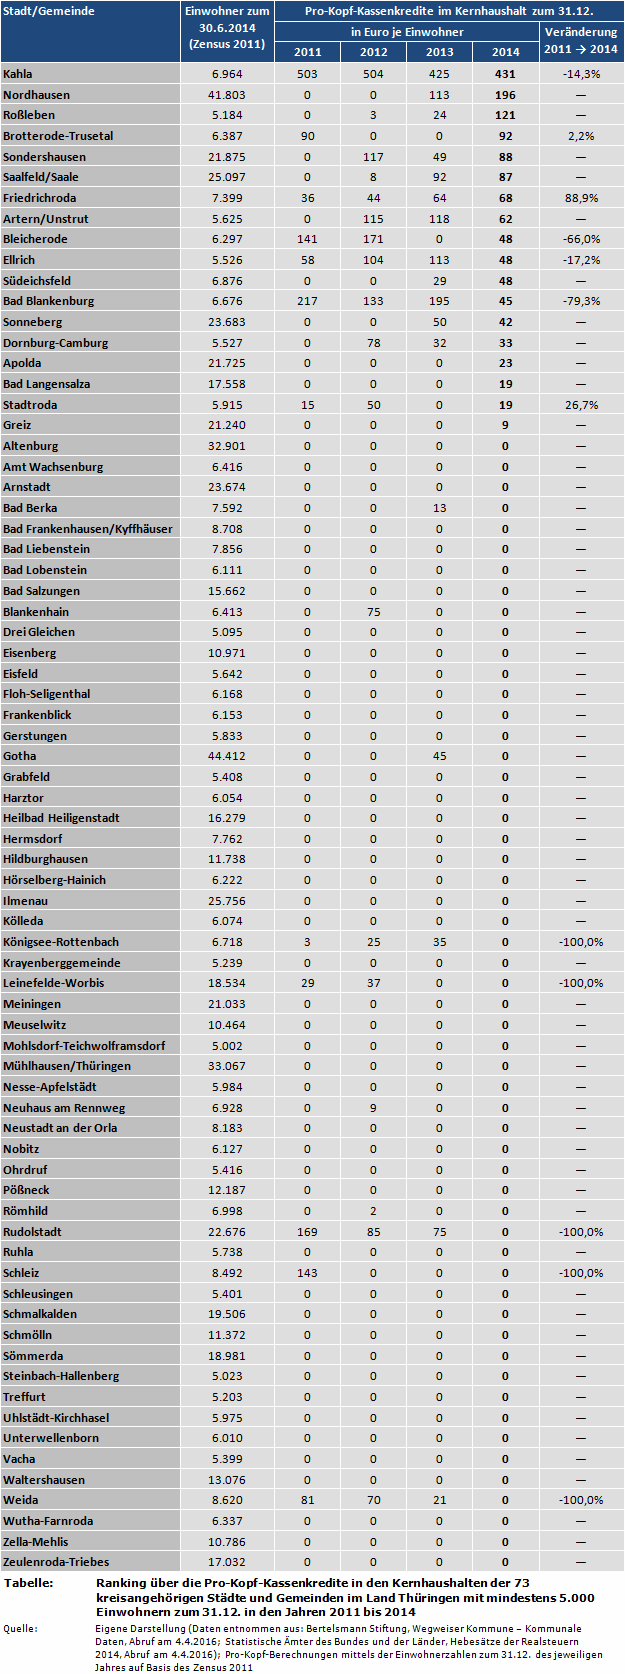 Ranking über die Pro-Kopf-Kassenkredite in den Kernhaushalten der 73 kreisangehörigen Städte und Gemeinden im Land Thüringen mit mindestens 5.000 Einwohnern zum 31.12. in den Jahren 2011 bis 2014